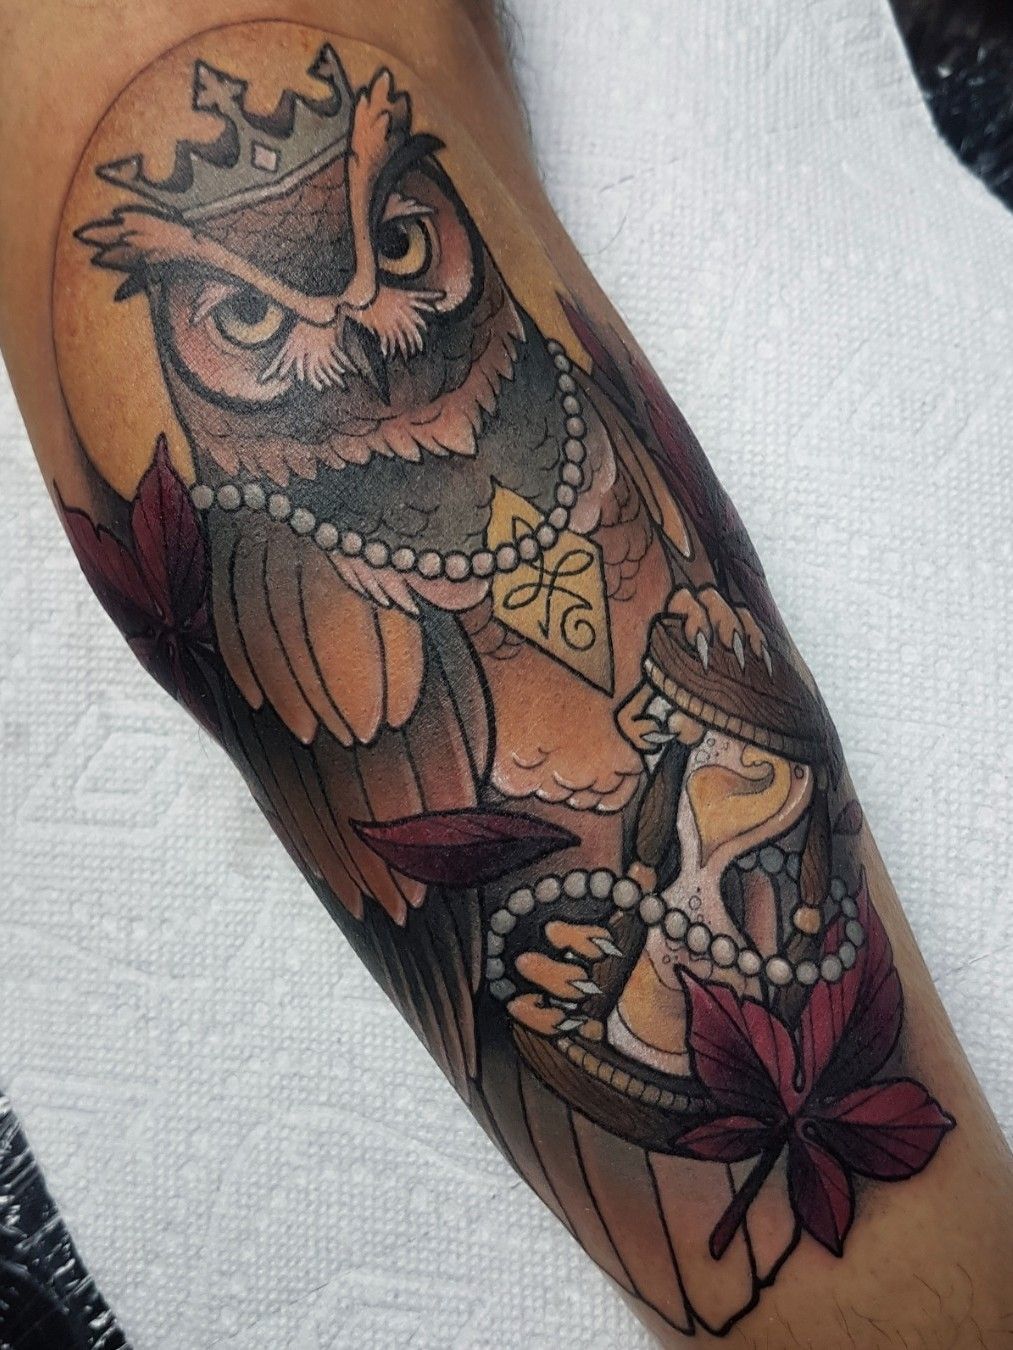 Tattoos of Owls give Wisdom to Body Art  Ratta TattooRatta Tattoo